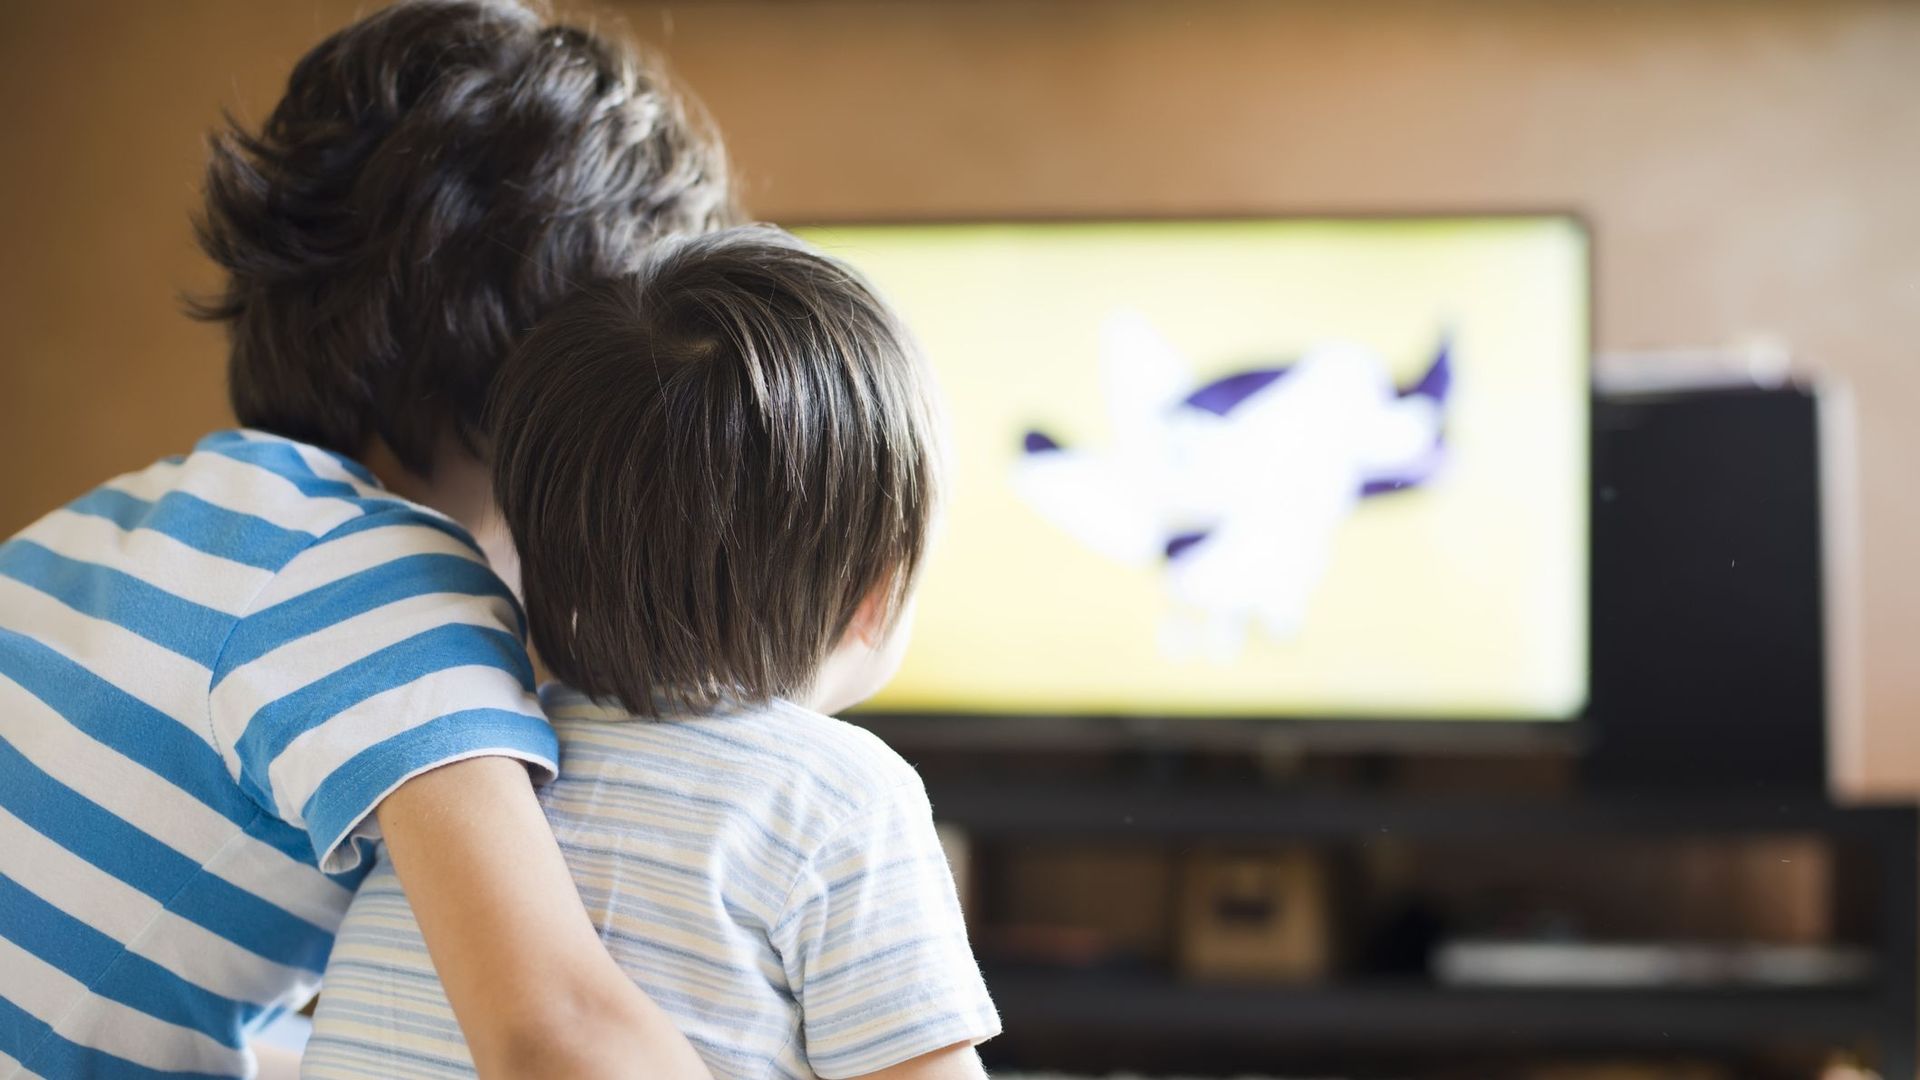 Une étude relie un excès de temps passé devant l'écran à un risque de surpoids chez les enfants.